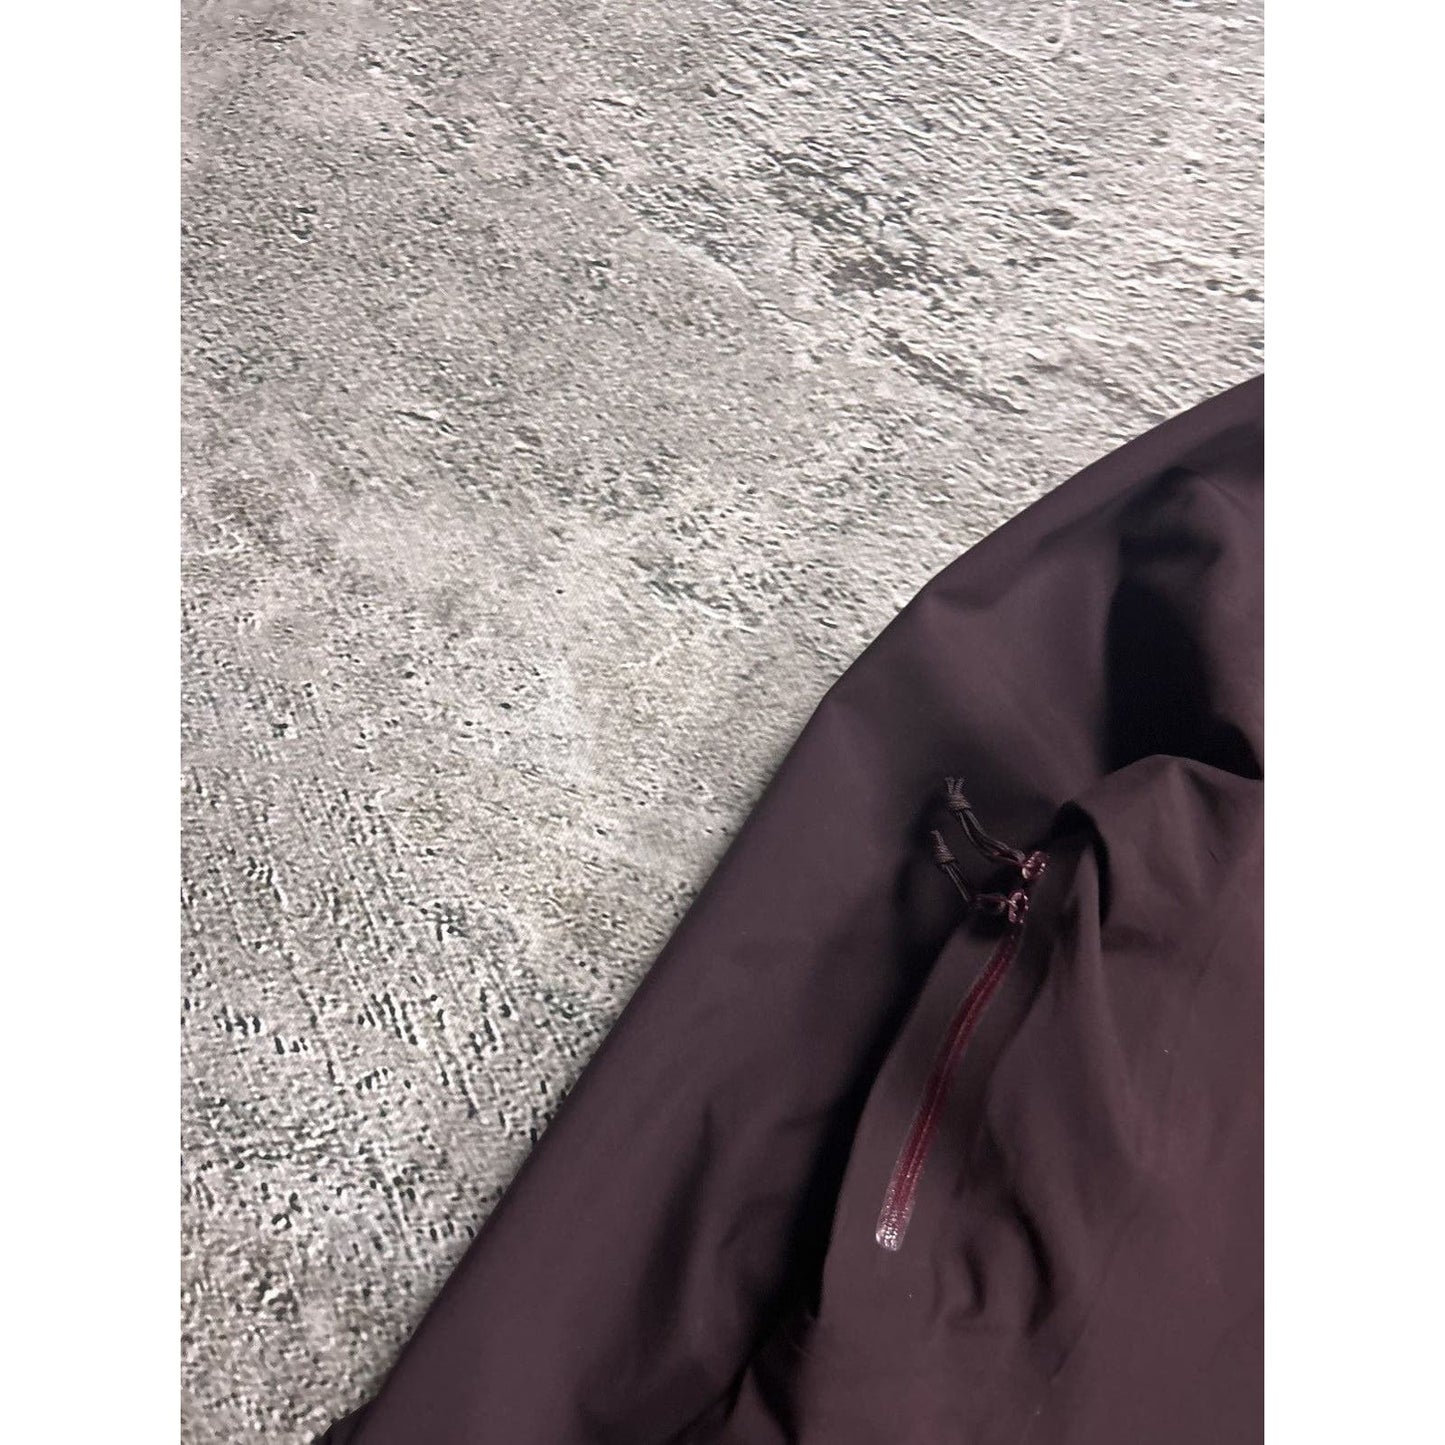 Arc’teryx jacket purple Goretex Recco XCR softshell ski